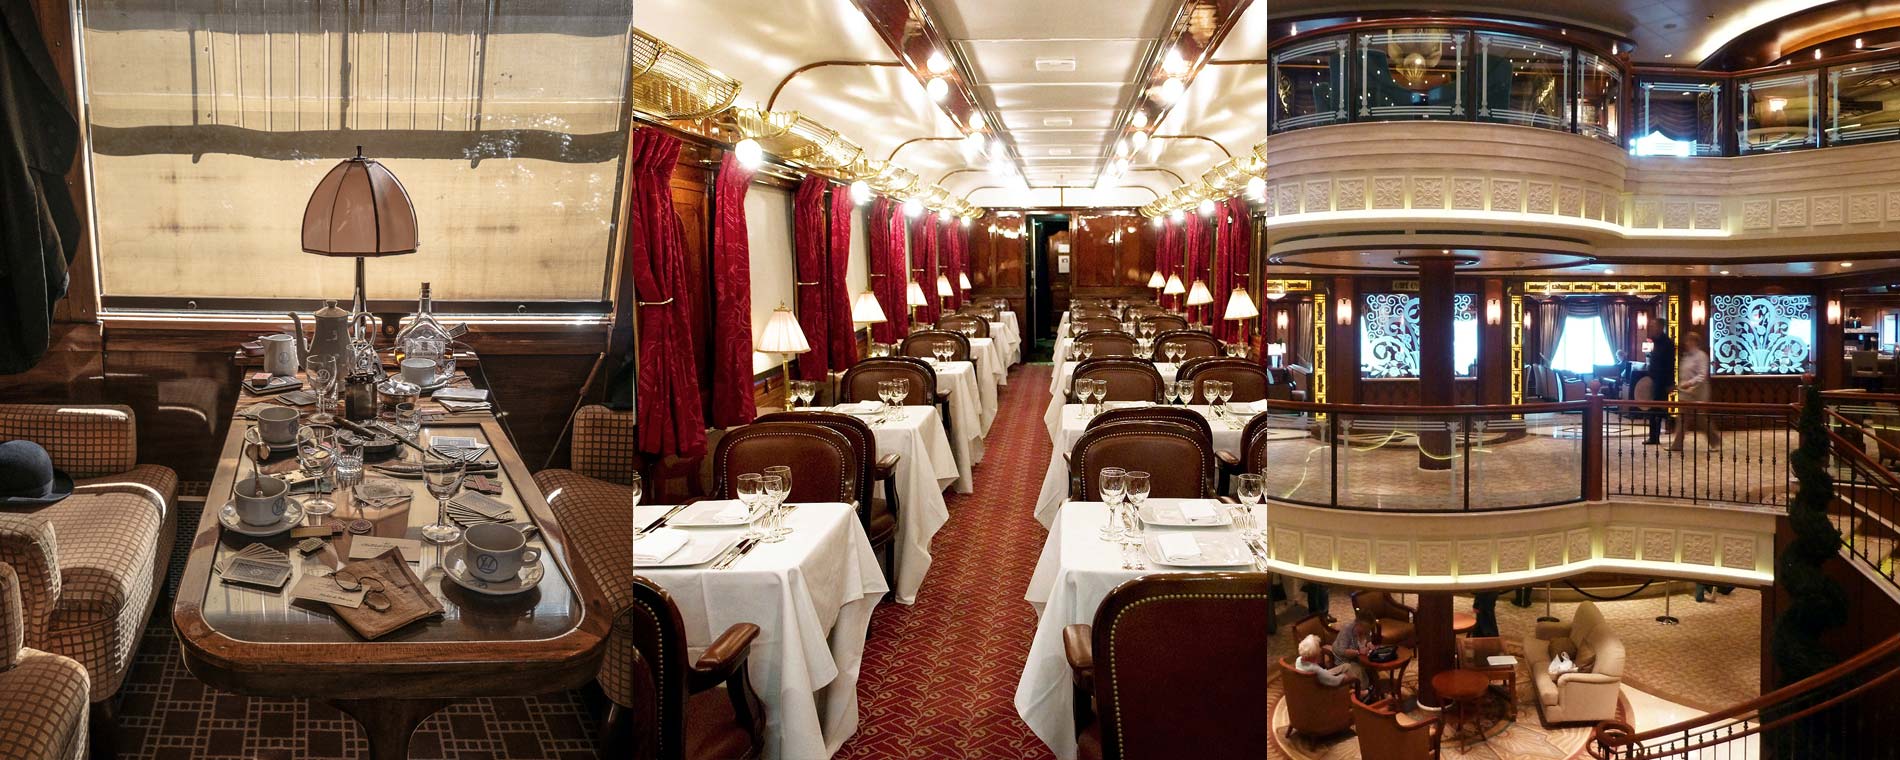 Orient Express, Queen Elizabeth,
                            Andrea Doria